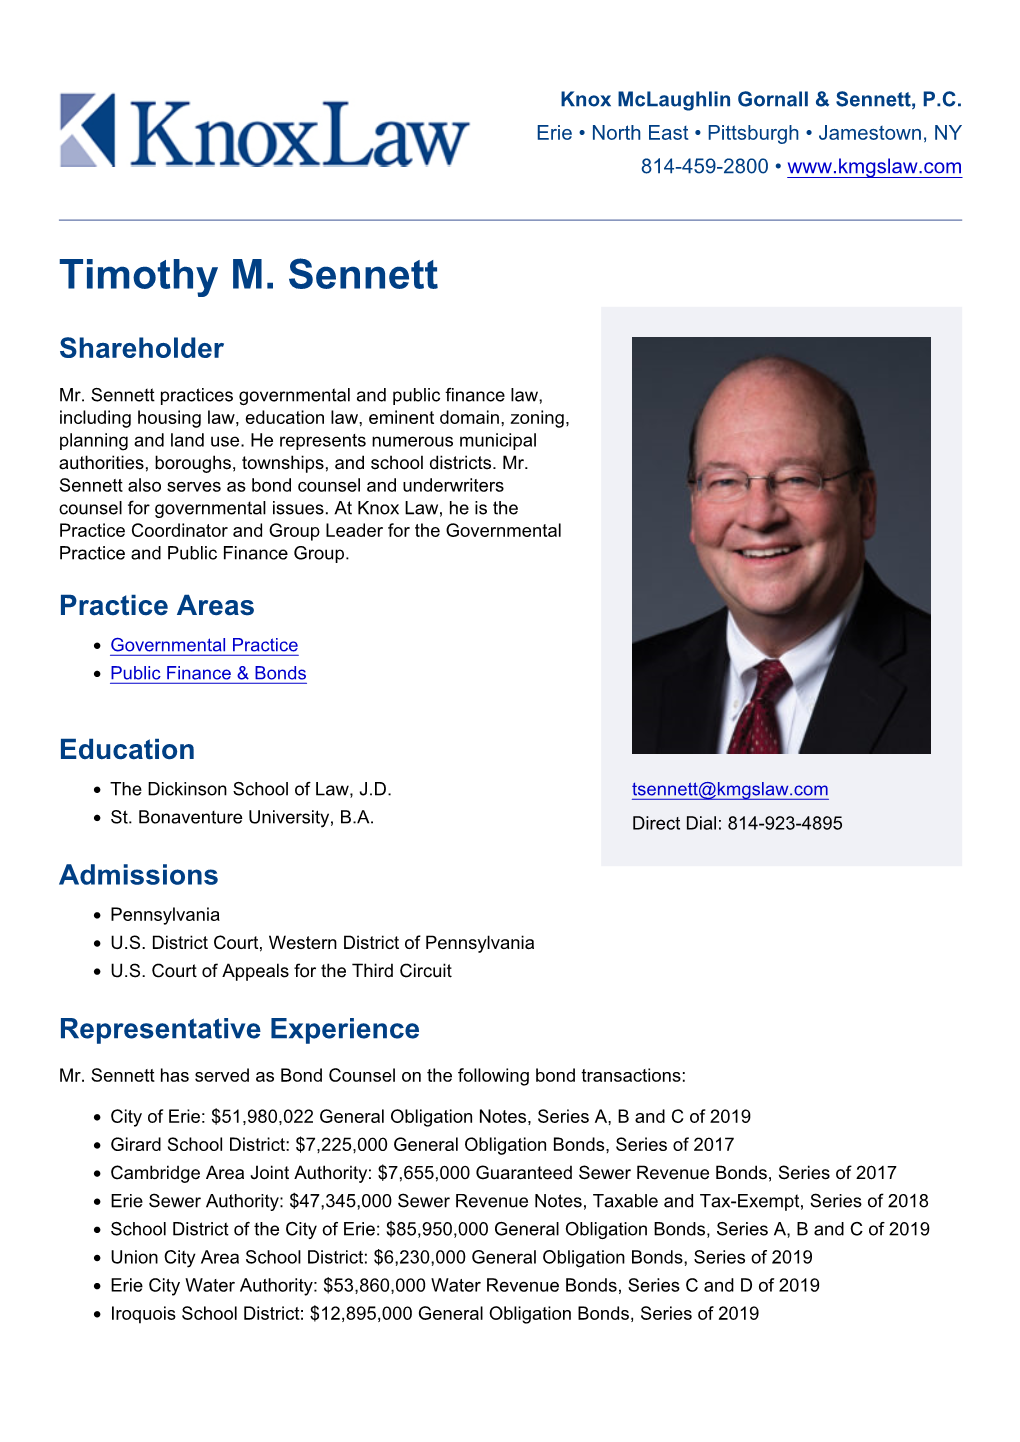 Timothy M. Sennett